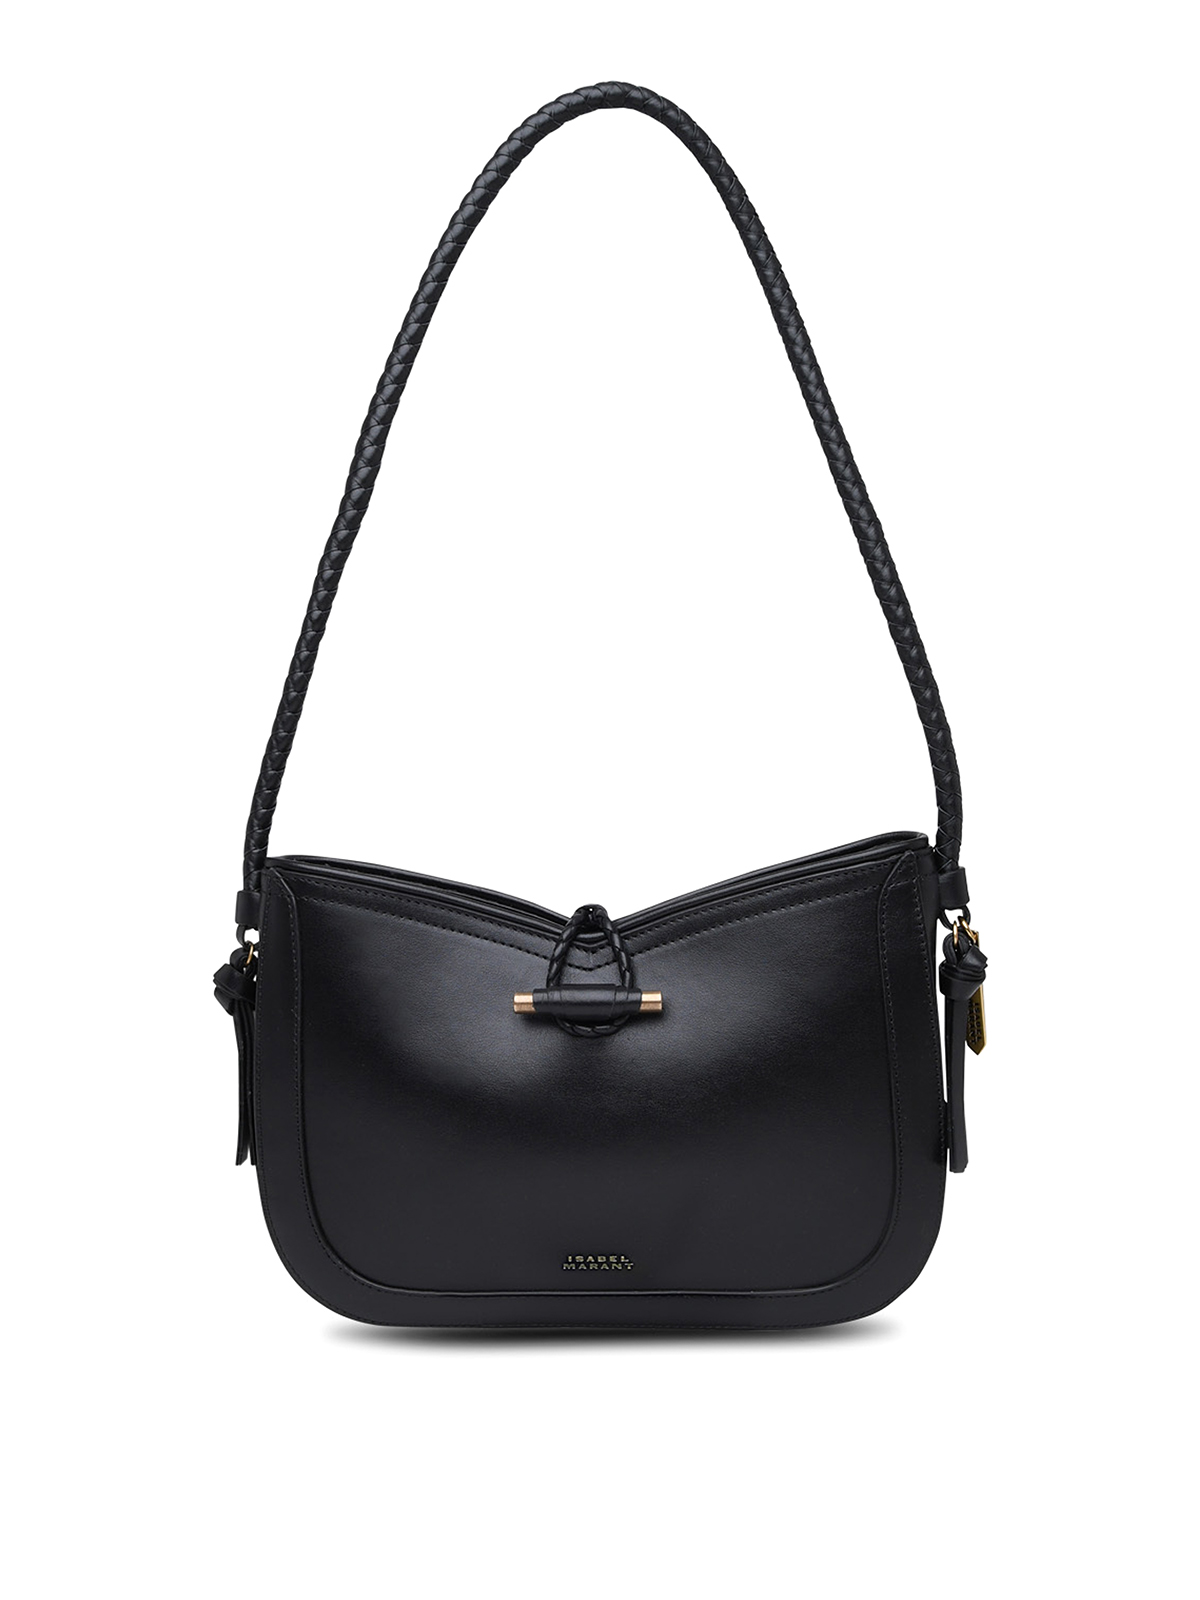 Isabel Marant Vigo Bag In Black Leather